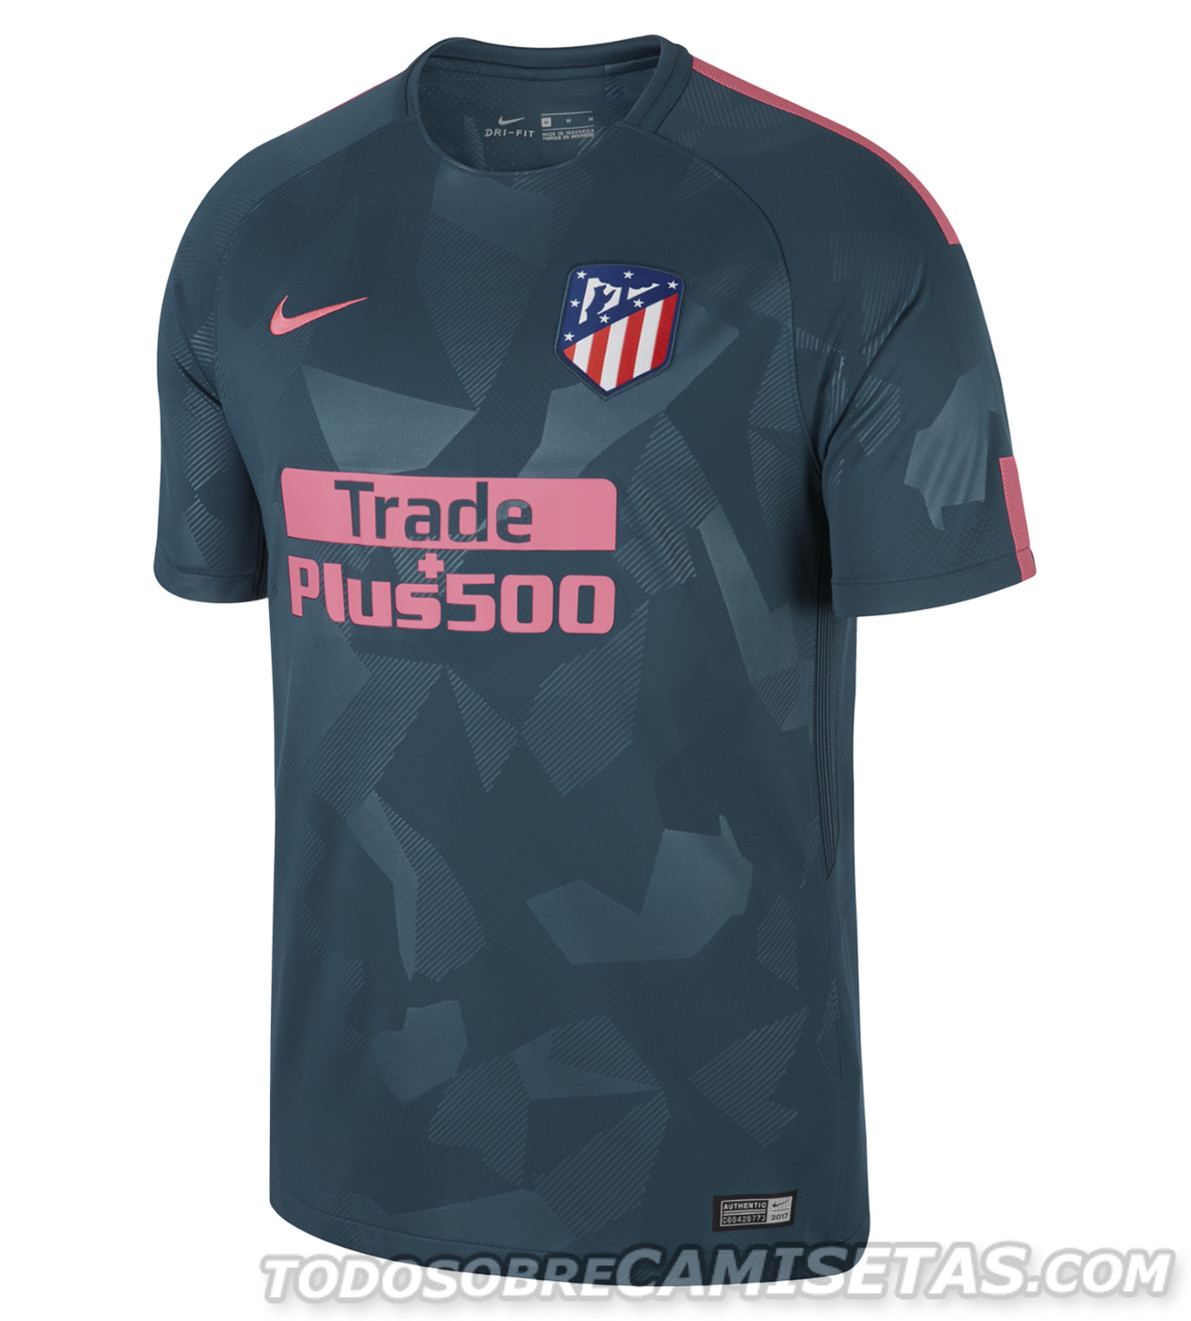 Tercera equipación Nike de Atlético Madrid 2017-18